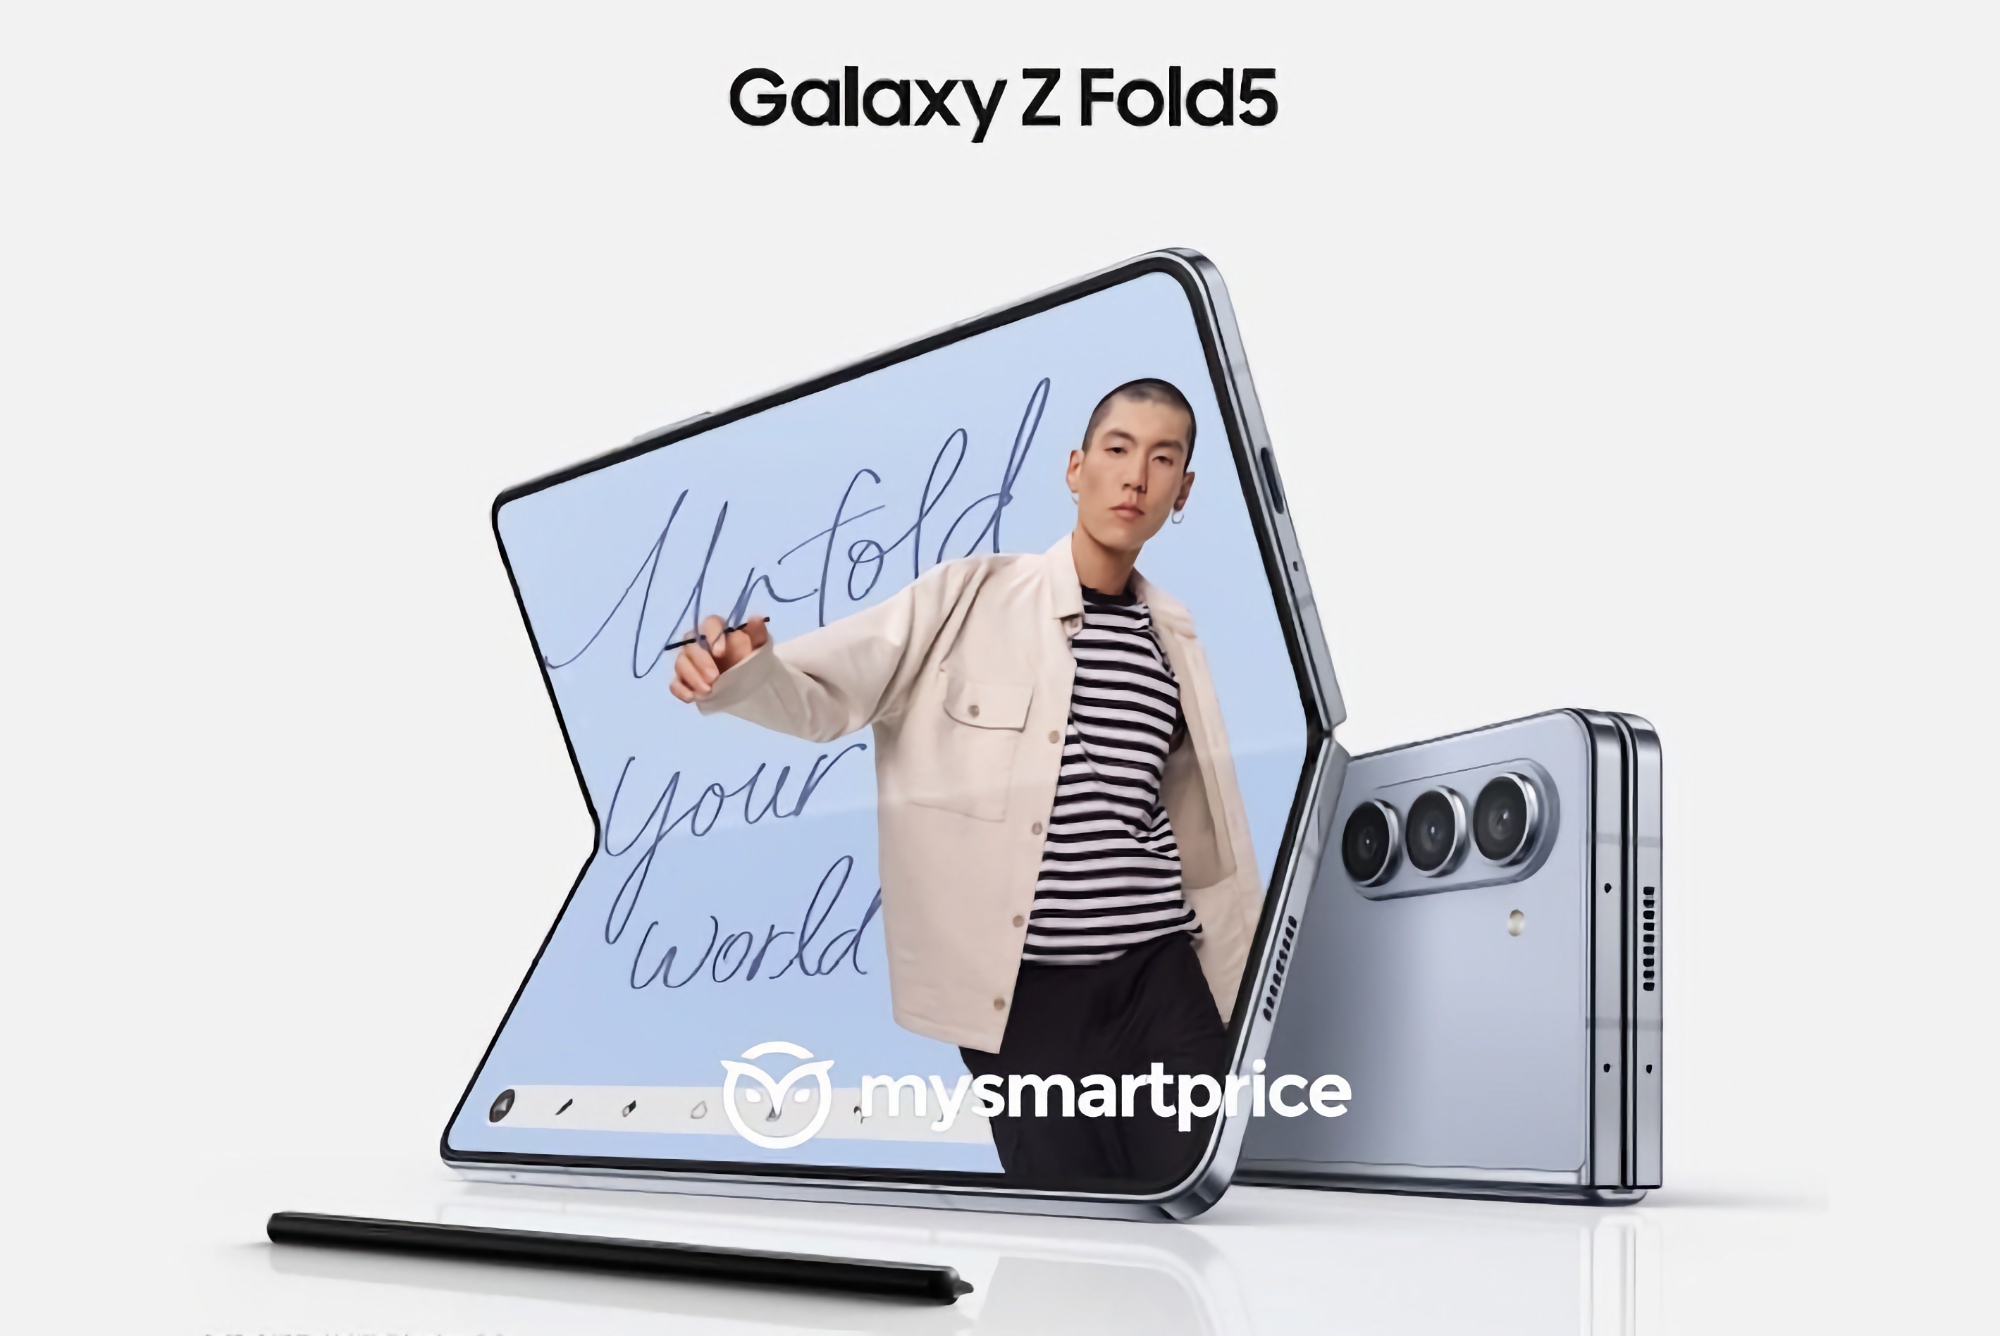 Billiger als das Samsung Galaxy Fold 4: inider verrät, wie viel das faltbare Smartphone Galaxy Fold 5 kosten wird